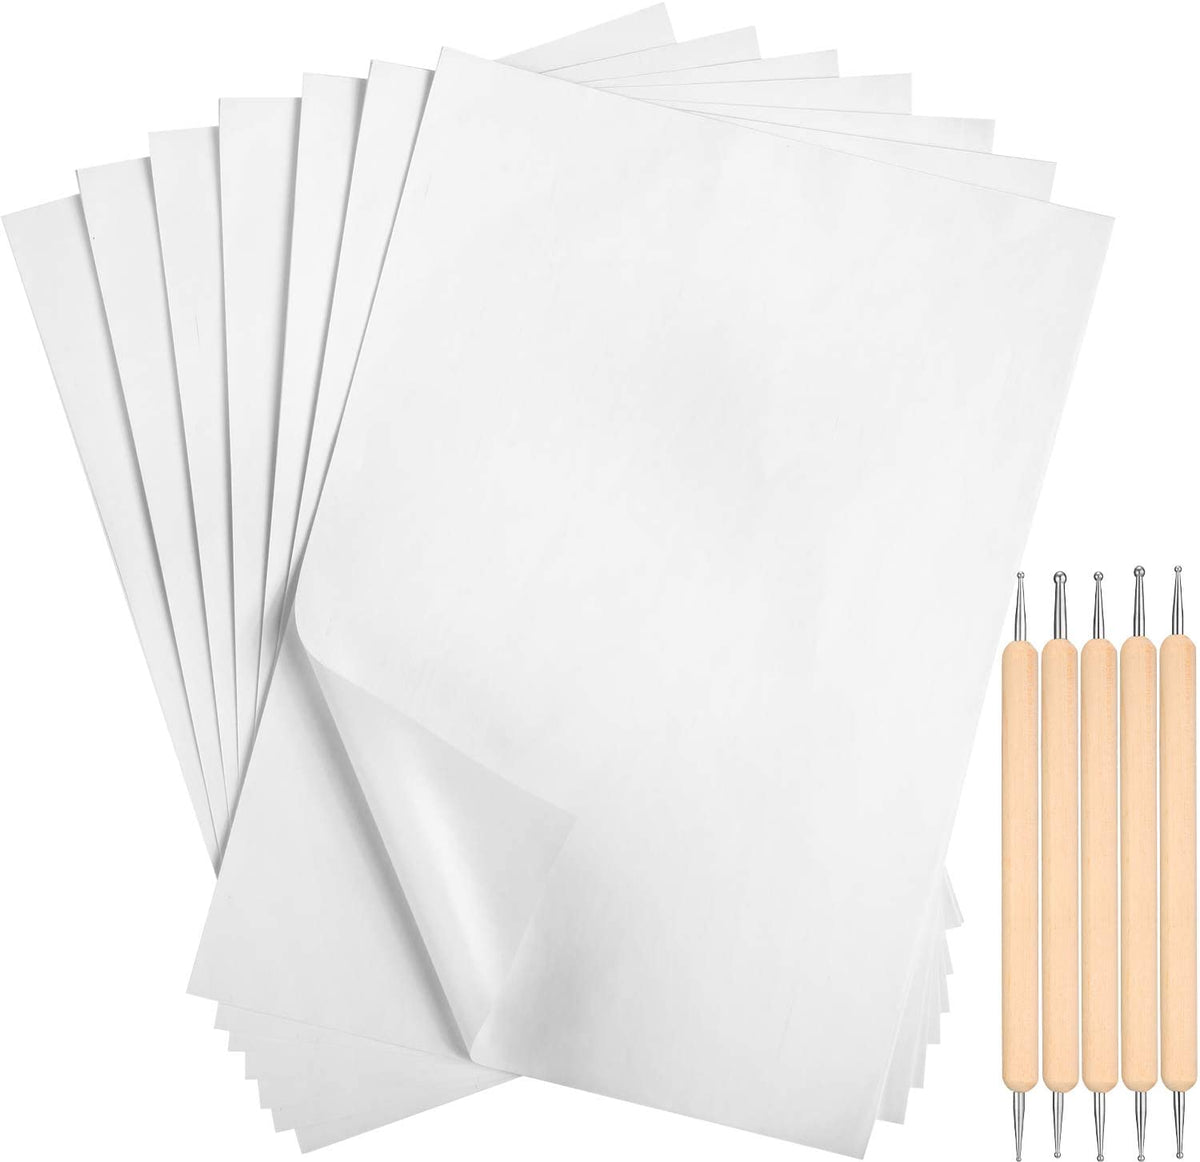 5 hojas de papel de transferencia de carbón pulgadas de papel de calco Papel  de grafito de carbón con lápiz de grabado en reli perfecl tela de bordado